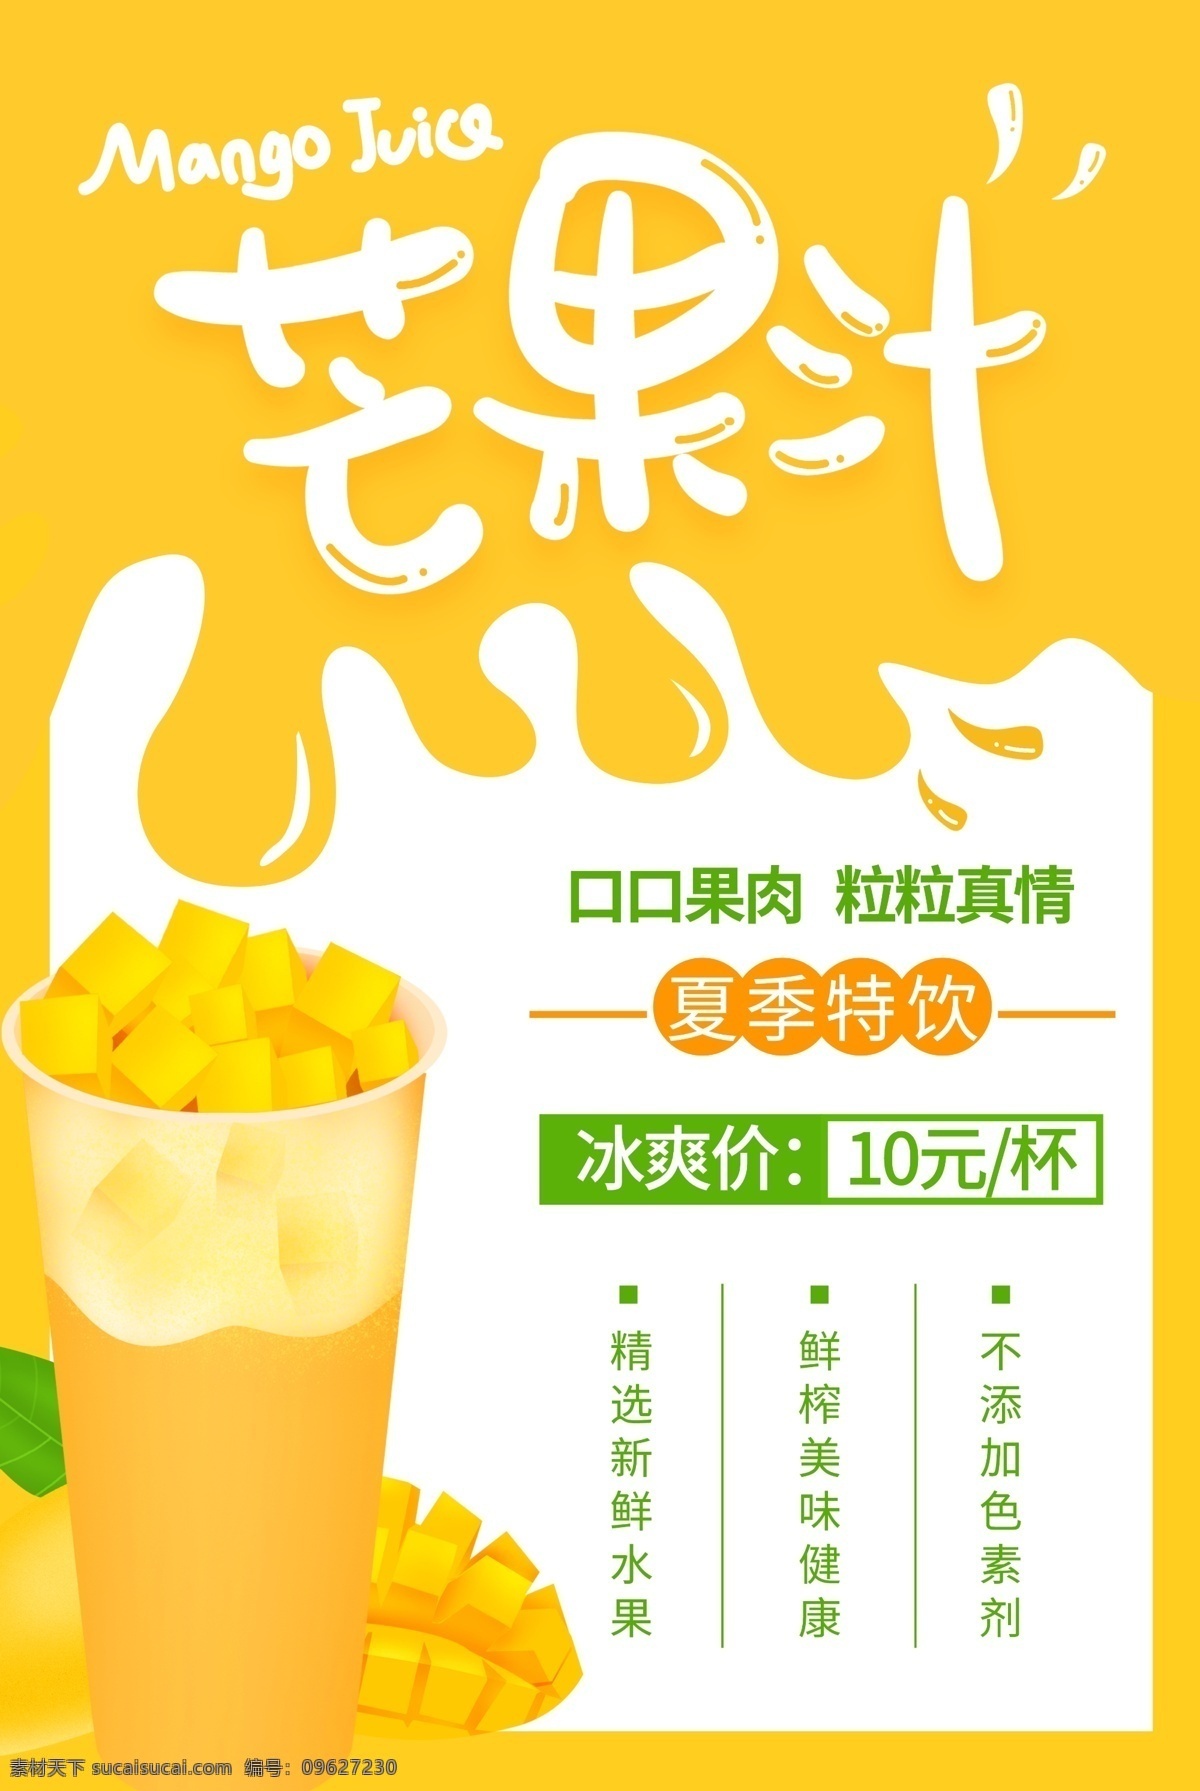 芒果汁 饮品 促销活动 宣传海报 素材图片 促销 活动 宣传 海报 饮料 甜品 类